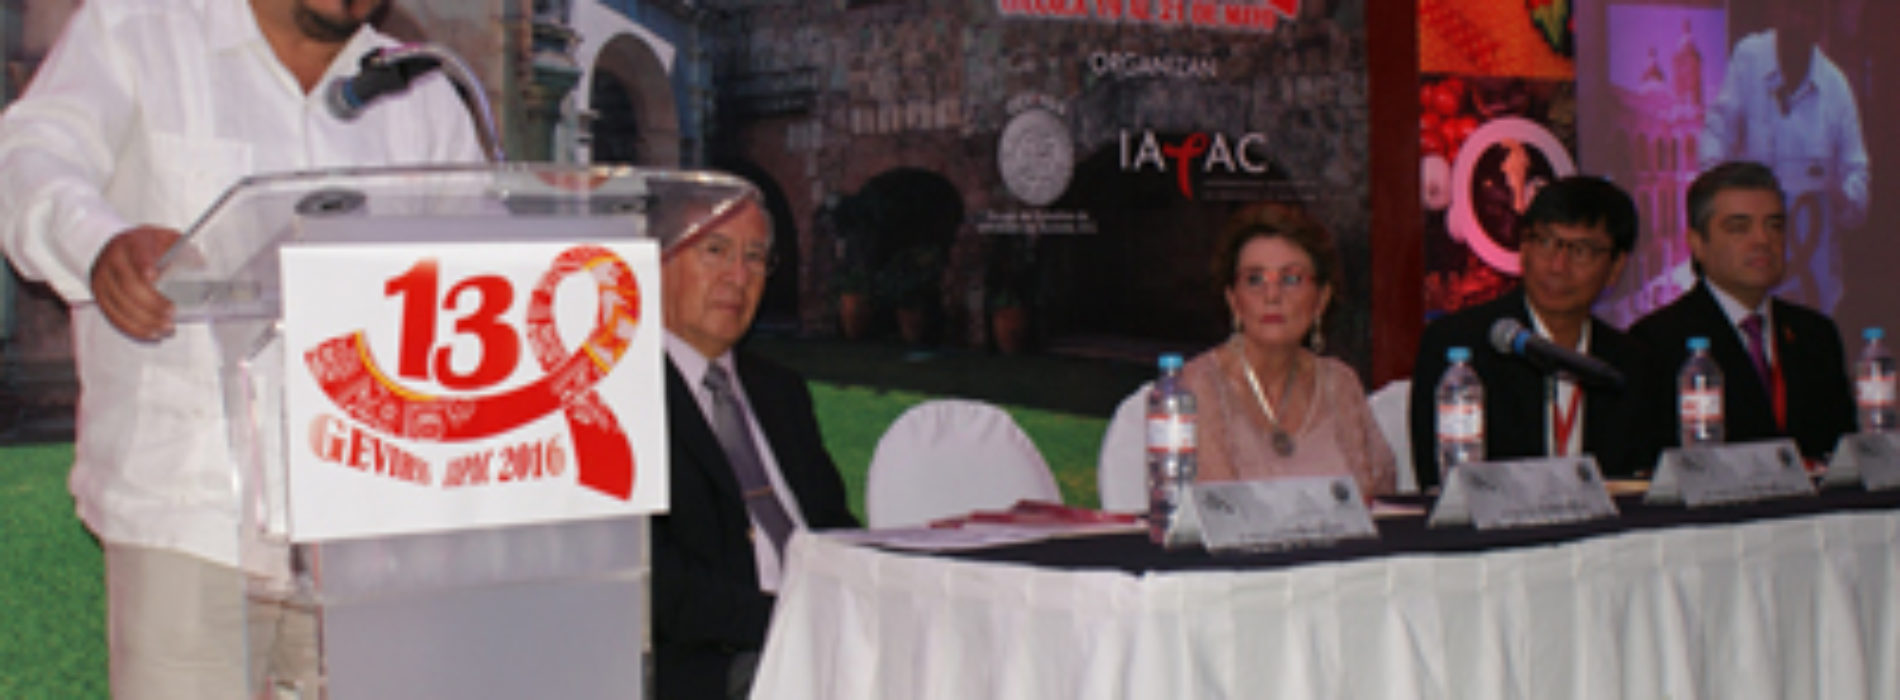 Oaxaca, sede del 13° Congreso Internacional sobre VIH y Sida